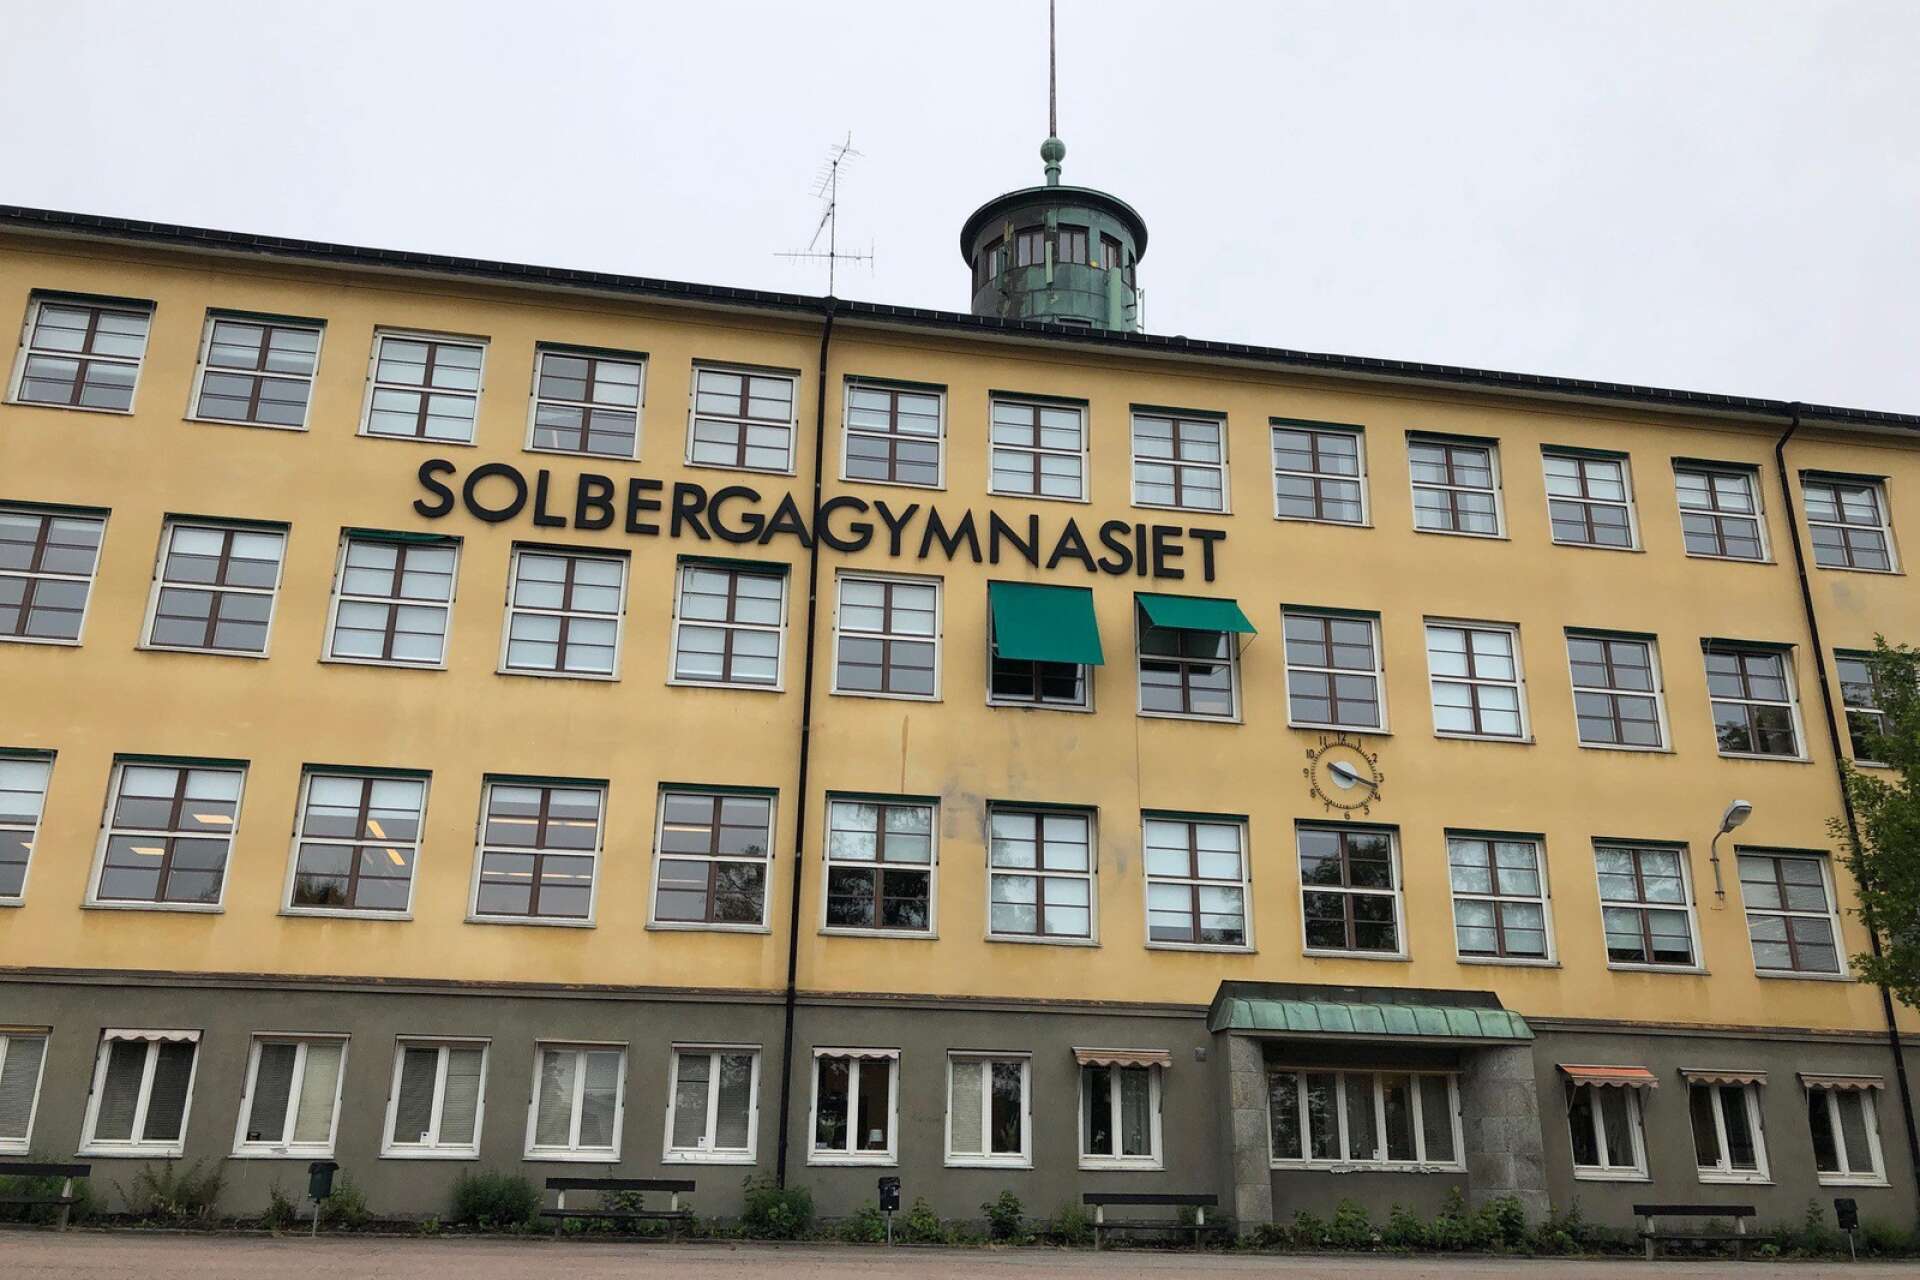 Solbergagymnasiet har fått anmärkningar på tre punkter efter ett inspektionsbesök av Arbetsmiljöverket.